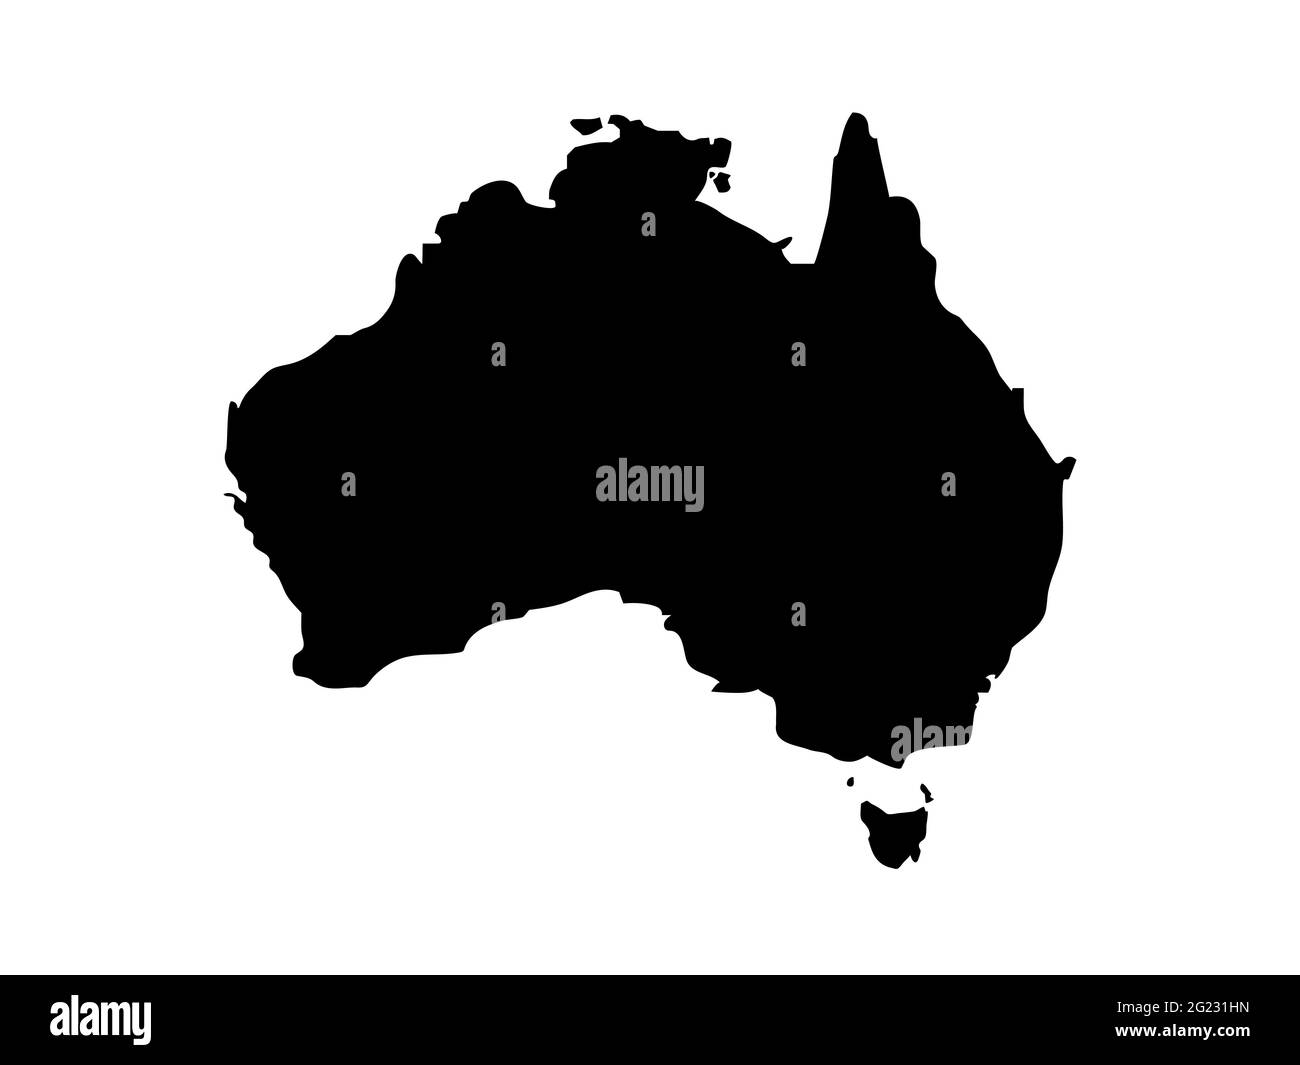 Australie carte vectorielle stylisée isolée sur fond blanc. Modèle de carte à plat noir. Carte du monde simplifiée. Image généralisée du continent Austral Illustration de Vecteur